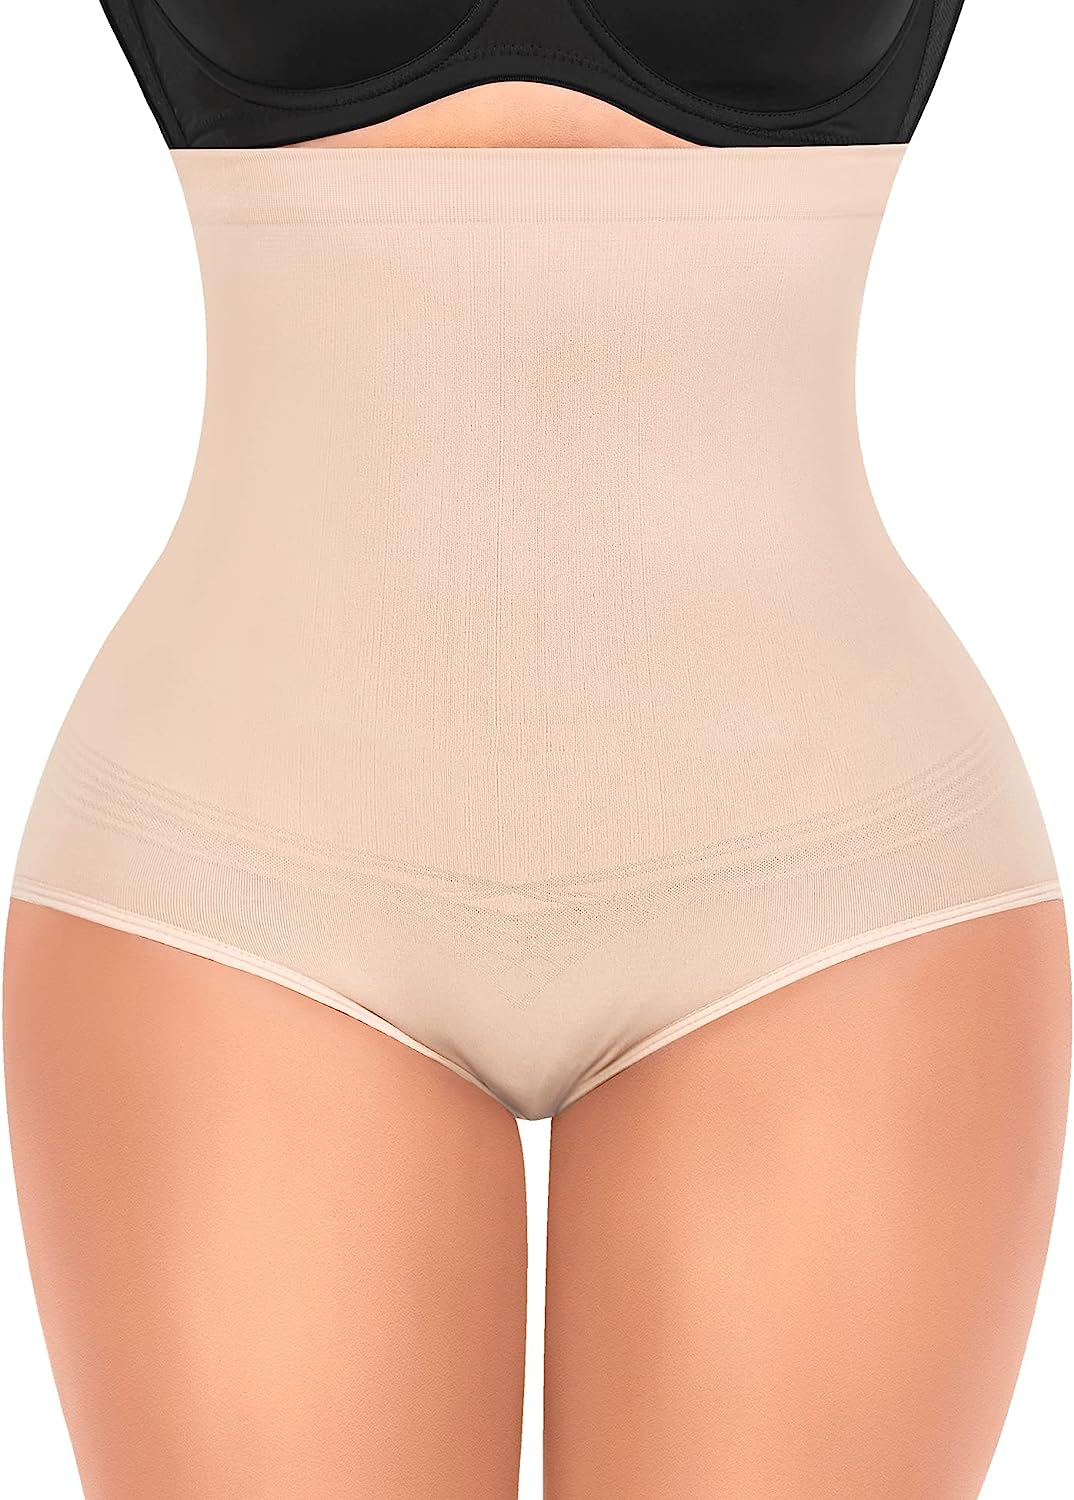 DERCA Tummy Control Shapewear Underwear for Women High Waisted